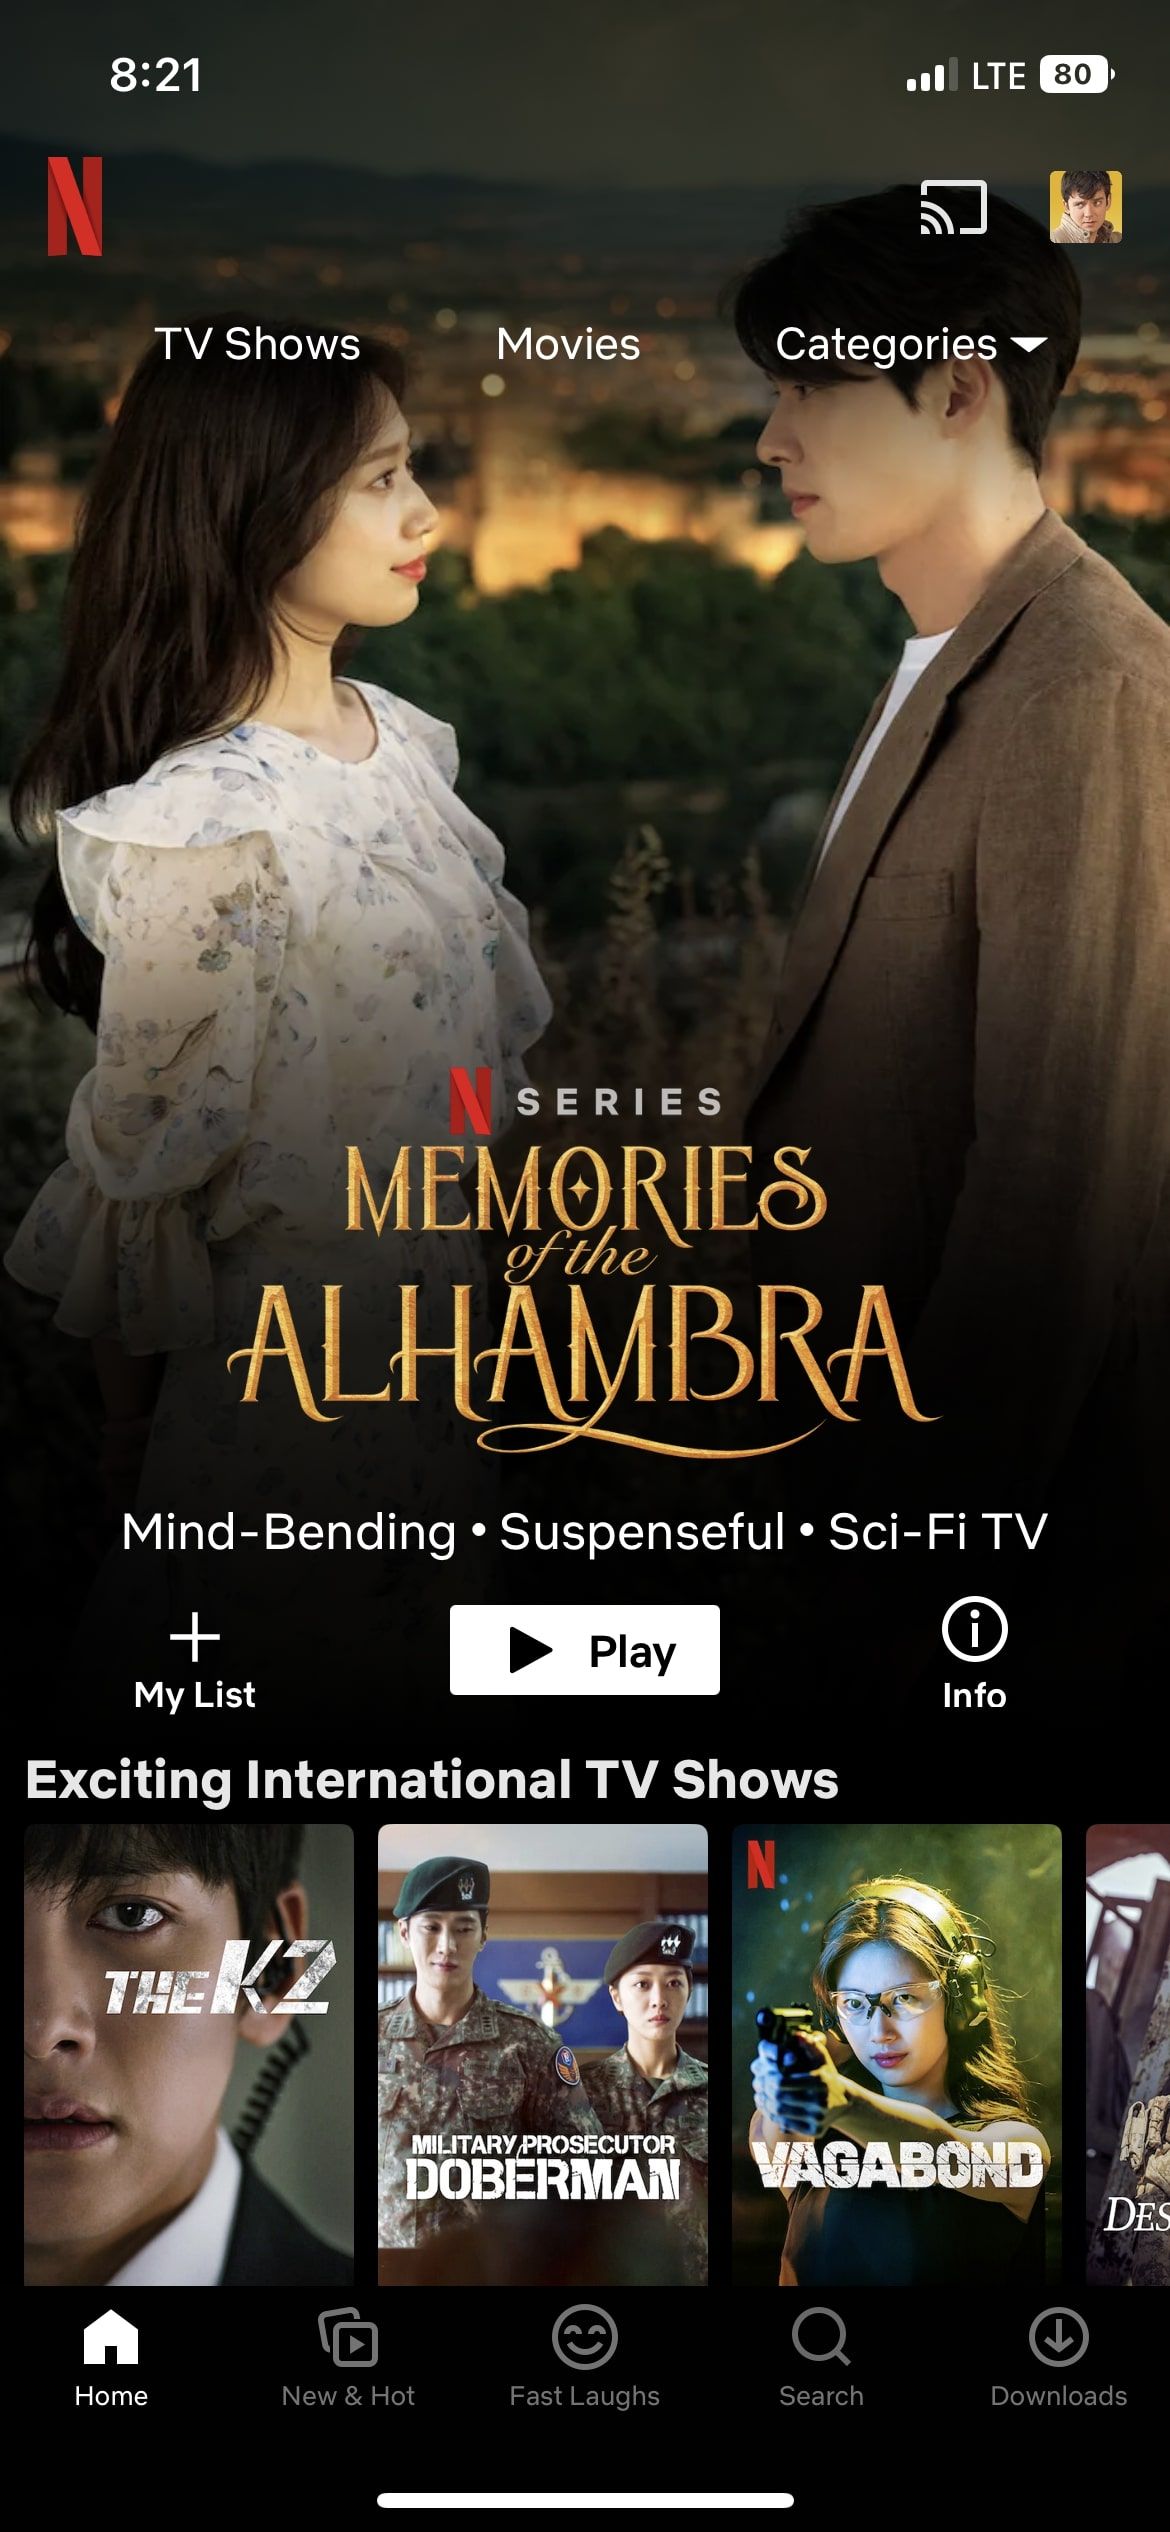 Netflix iOS app home screen